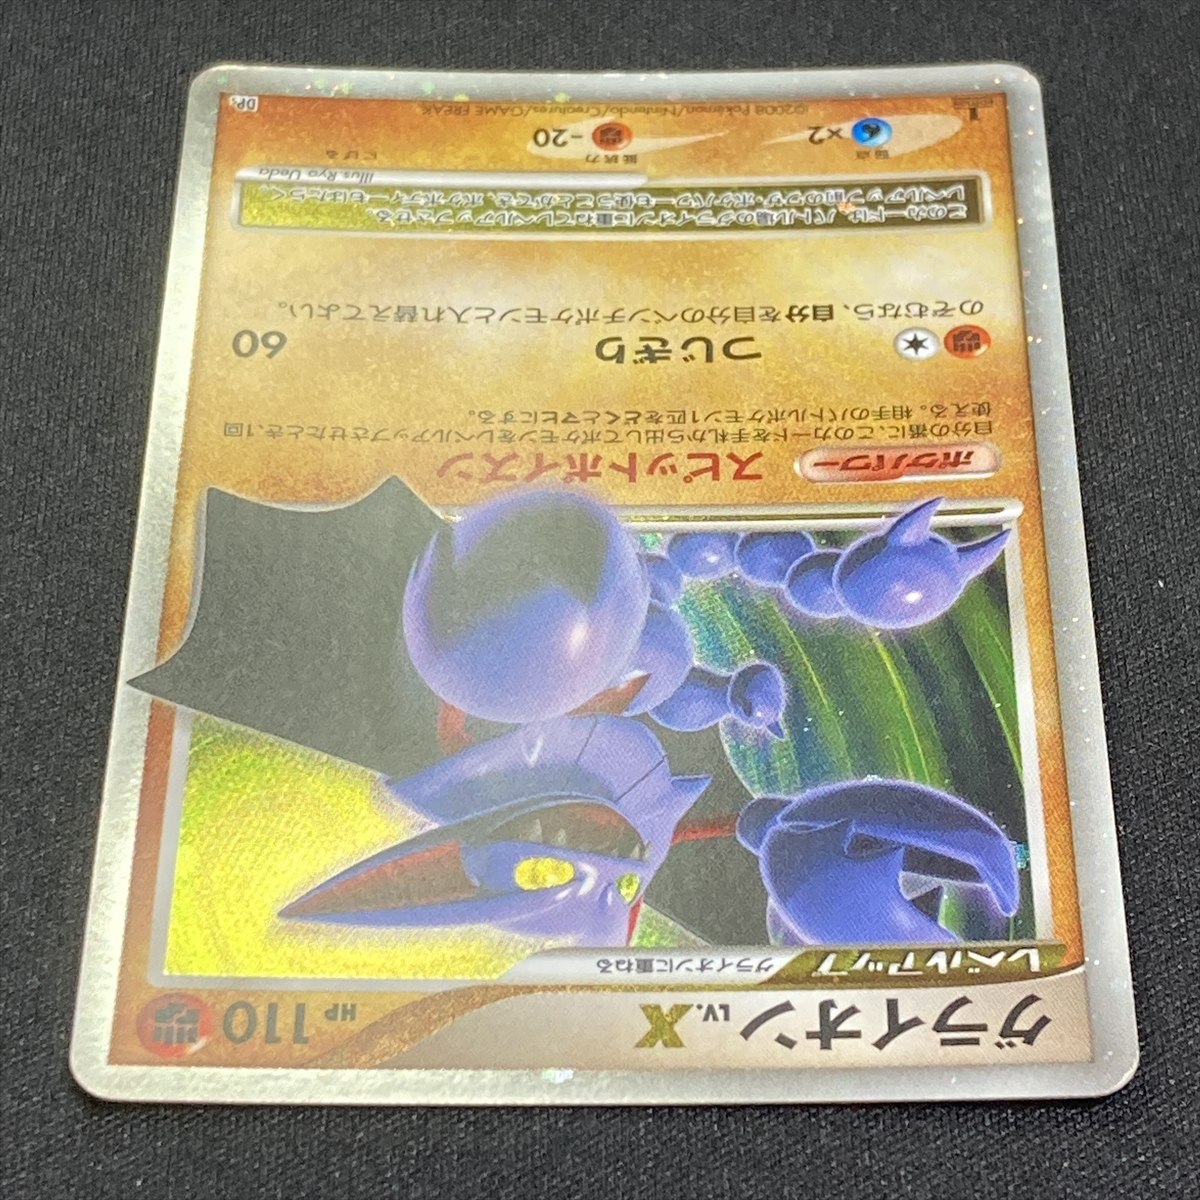 Gliscor Lv X Dp5 Pokemon Card Japanese 08 1st Edition ポケモン カード グライオン ポケカ ポケモンカードゲーム 売買されたオークション情報 Yahooの商品情報をアーカイブ公開 オークファン Aucfan Com